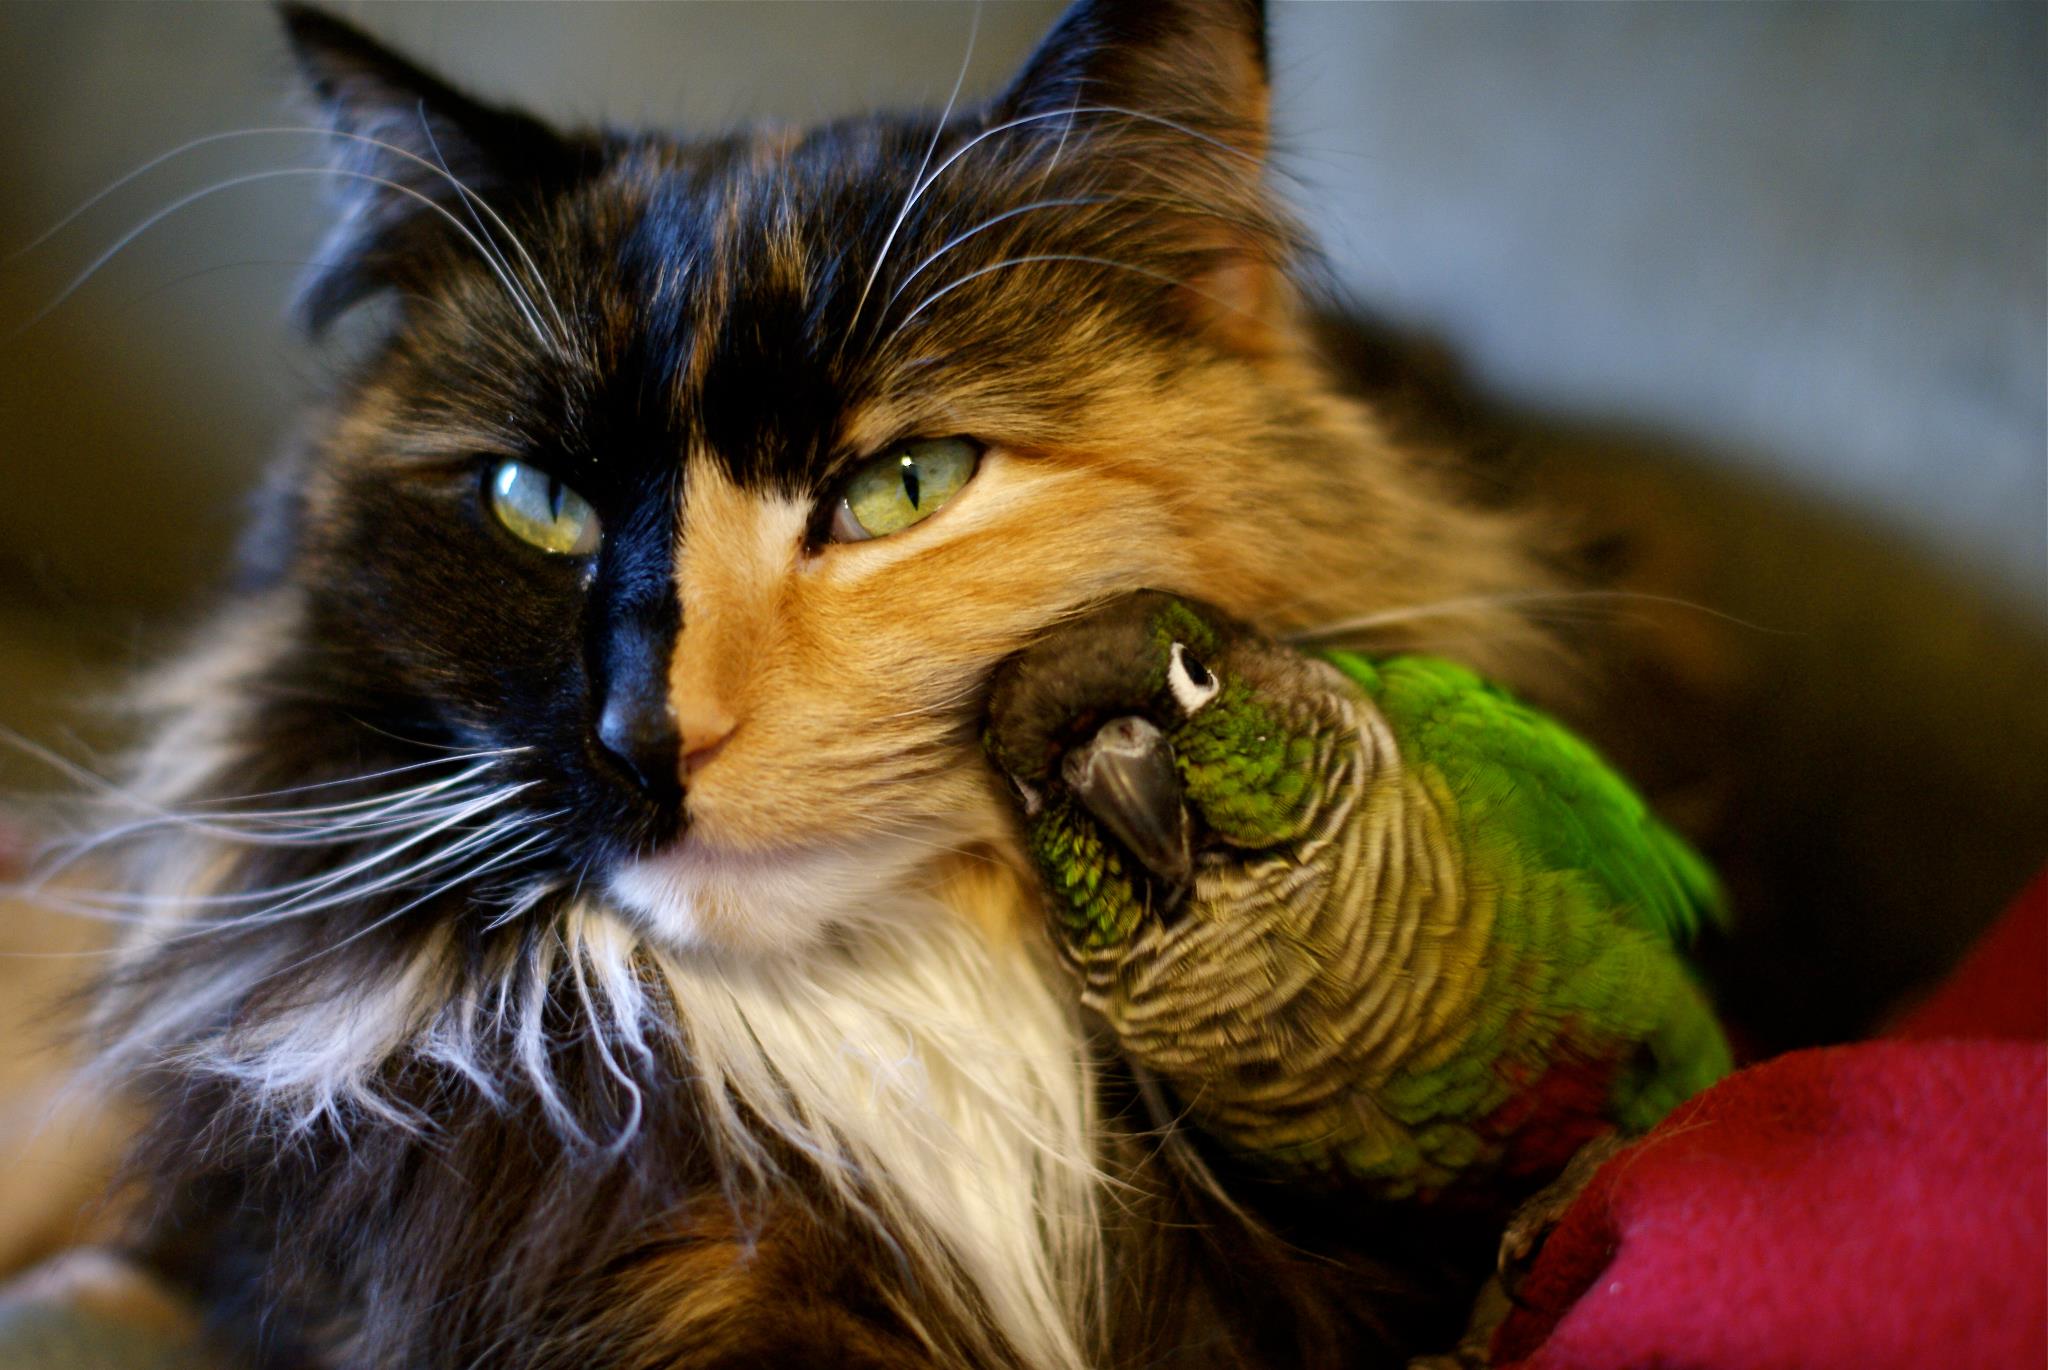 Cat and bird, best friends - Imgur